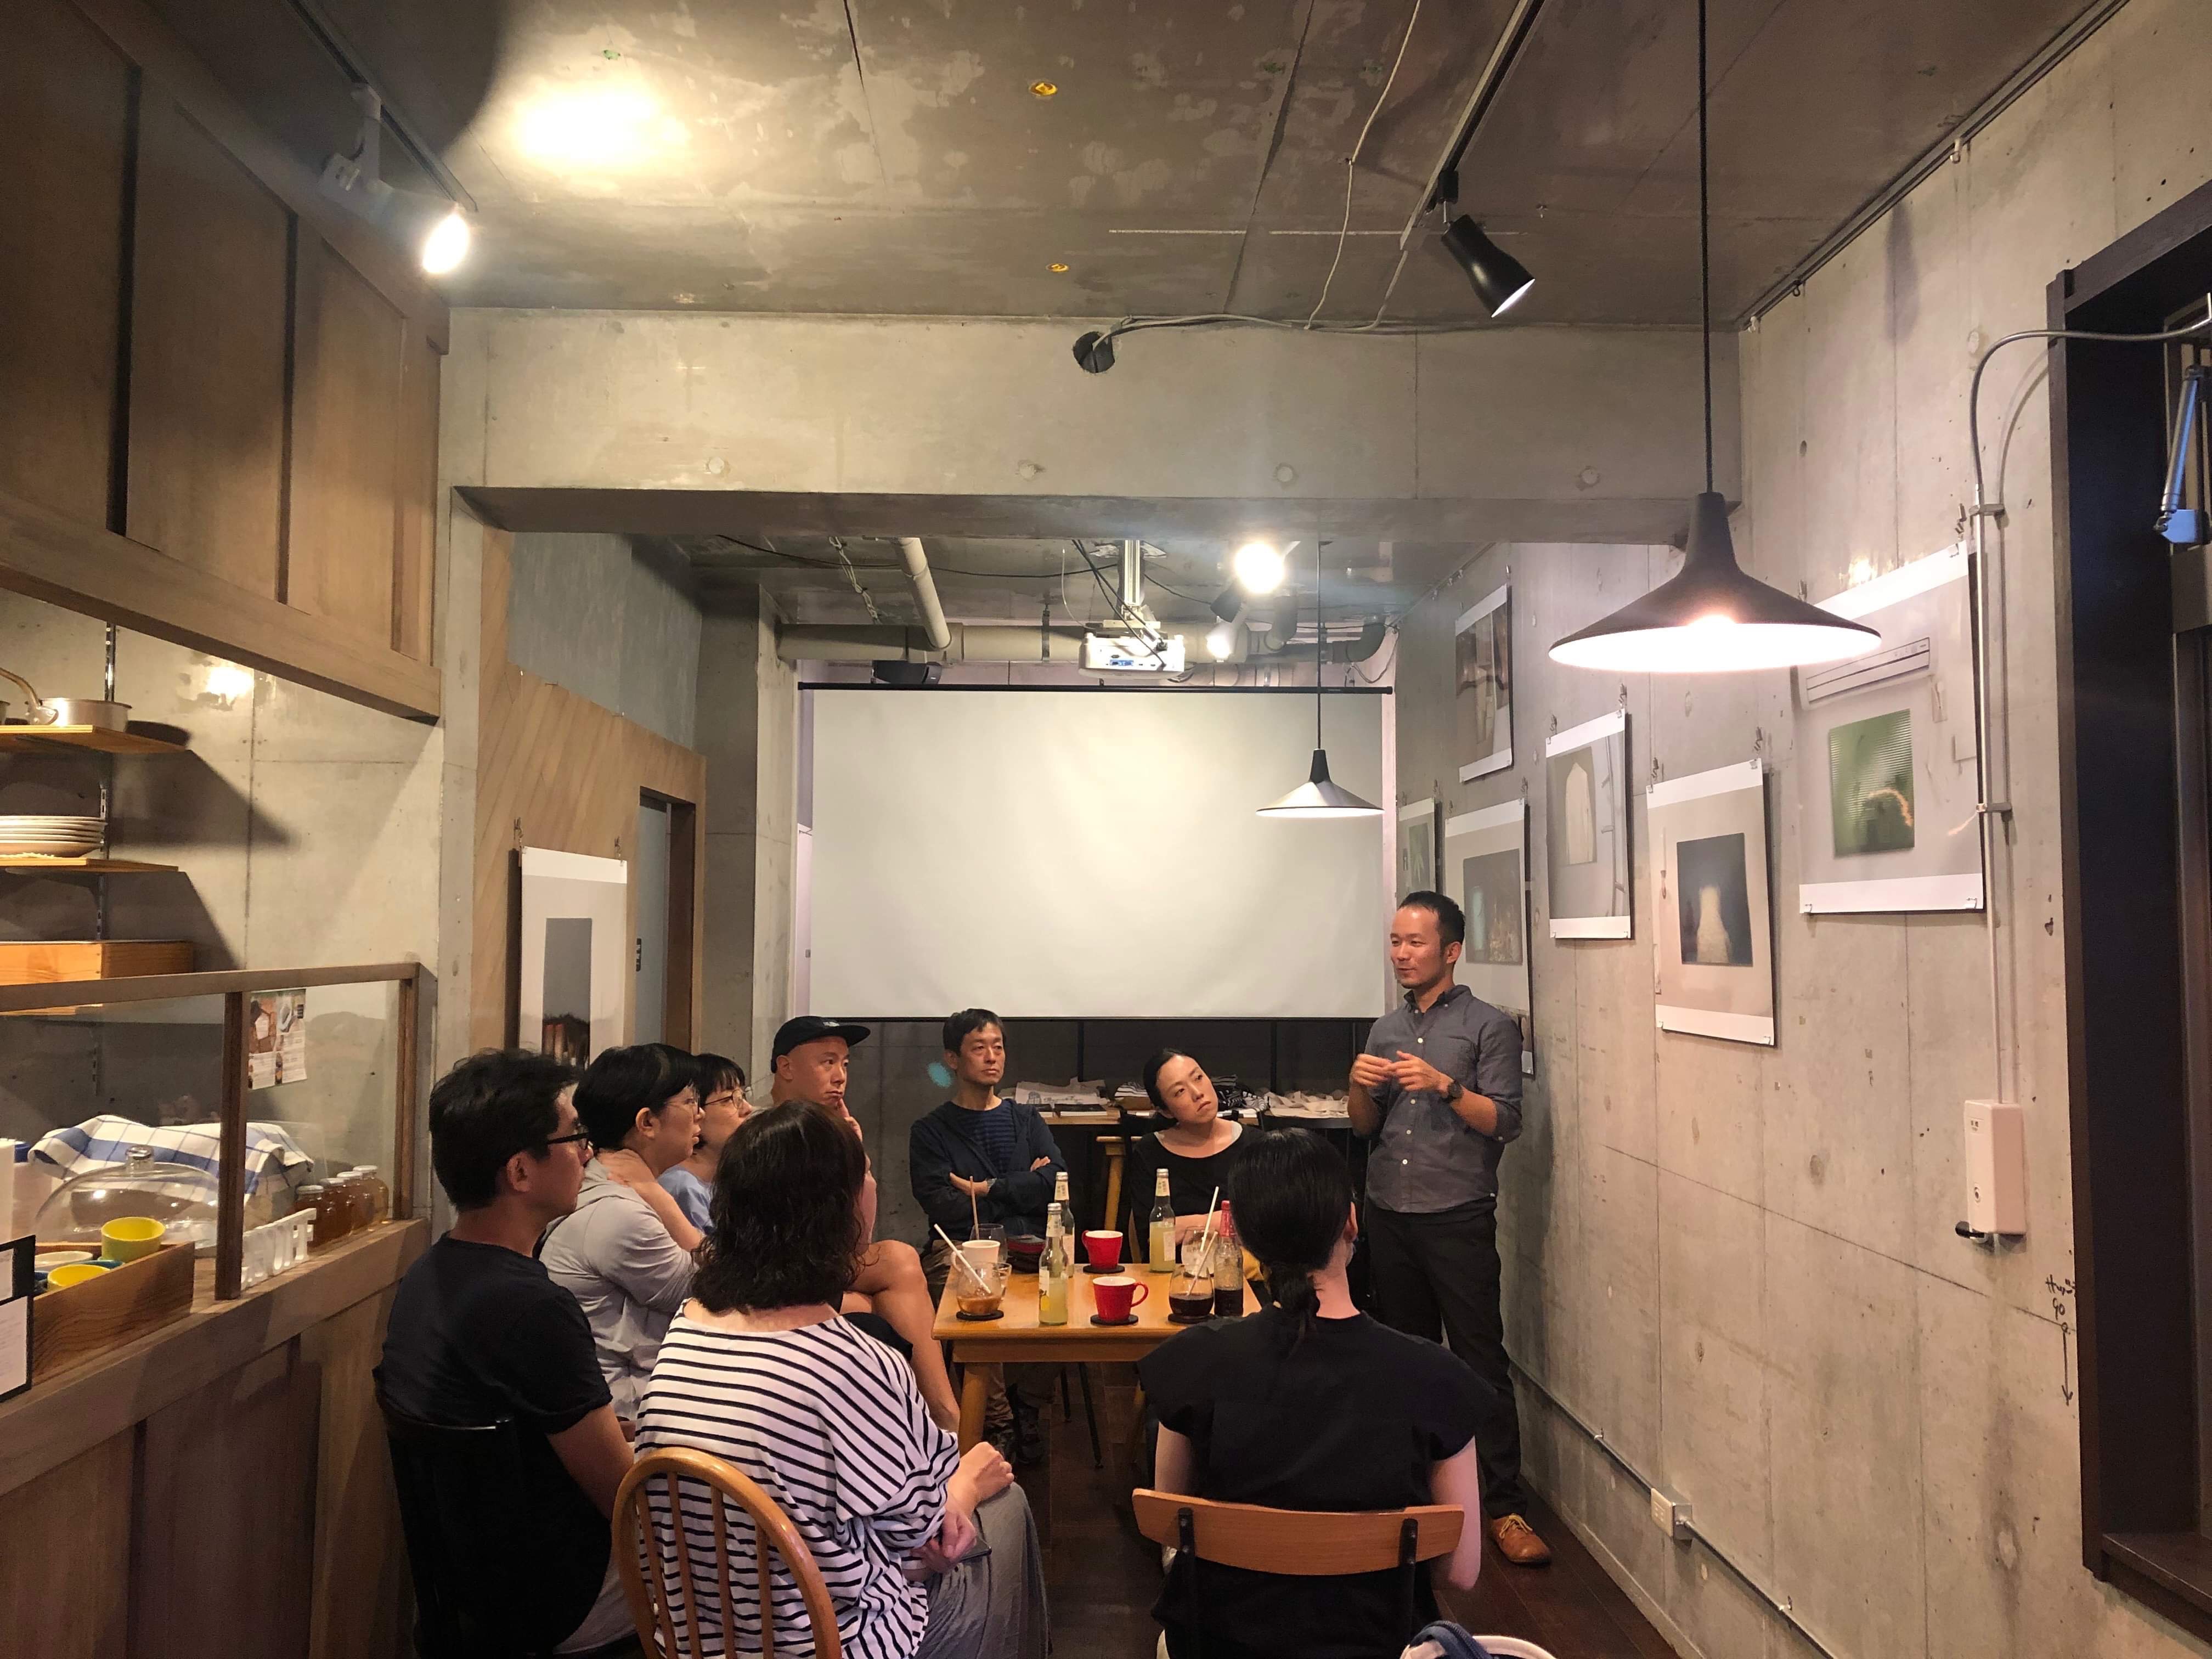 国立市のカフェcafe gallery chuffにて開催された小田川悠による対話型鑑賞会のアートイベント